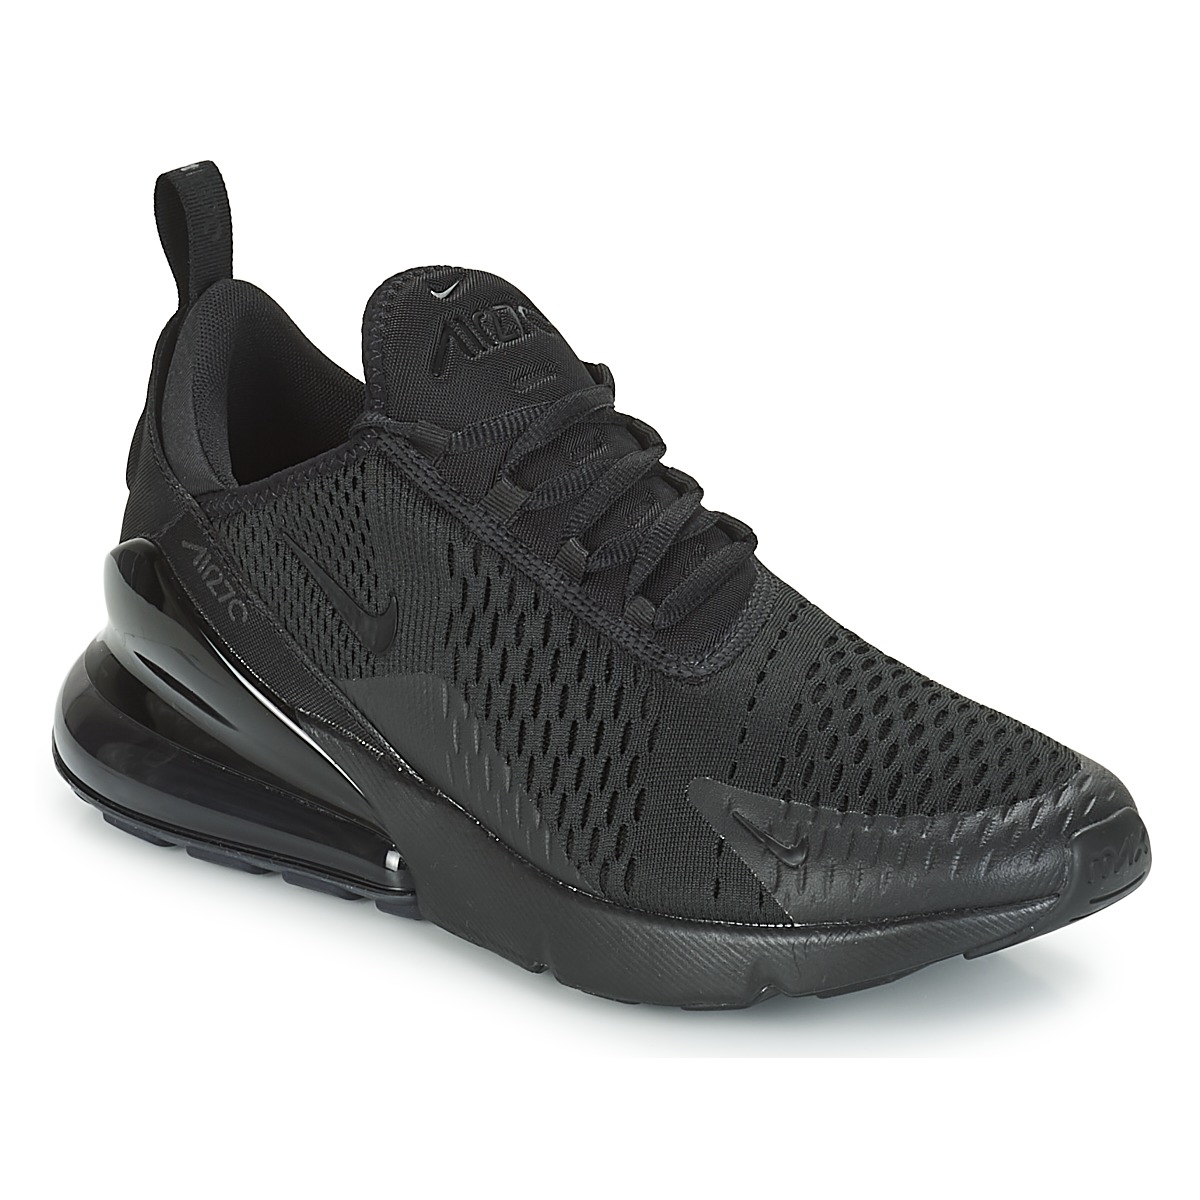 Παπούτσια Άνδρας Χαμηλά Sneakers Nike AIR MAX 270 Black